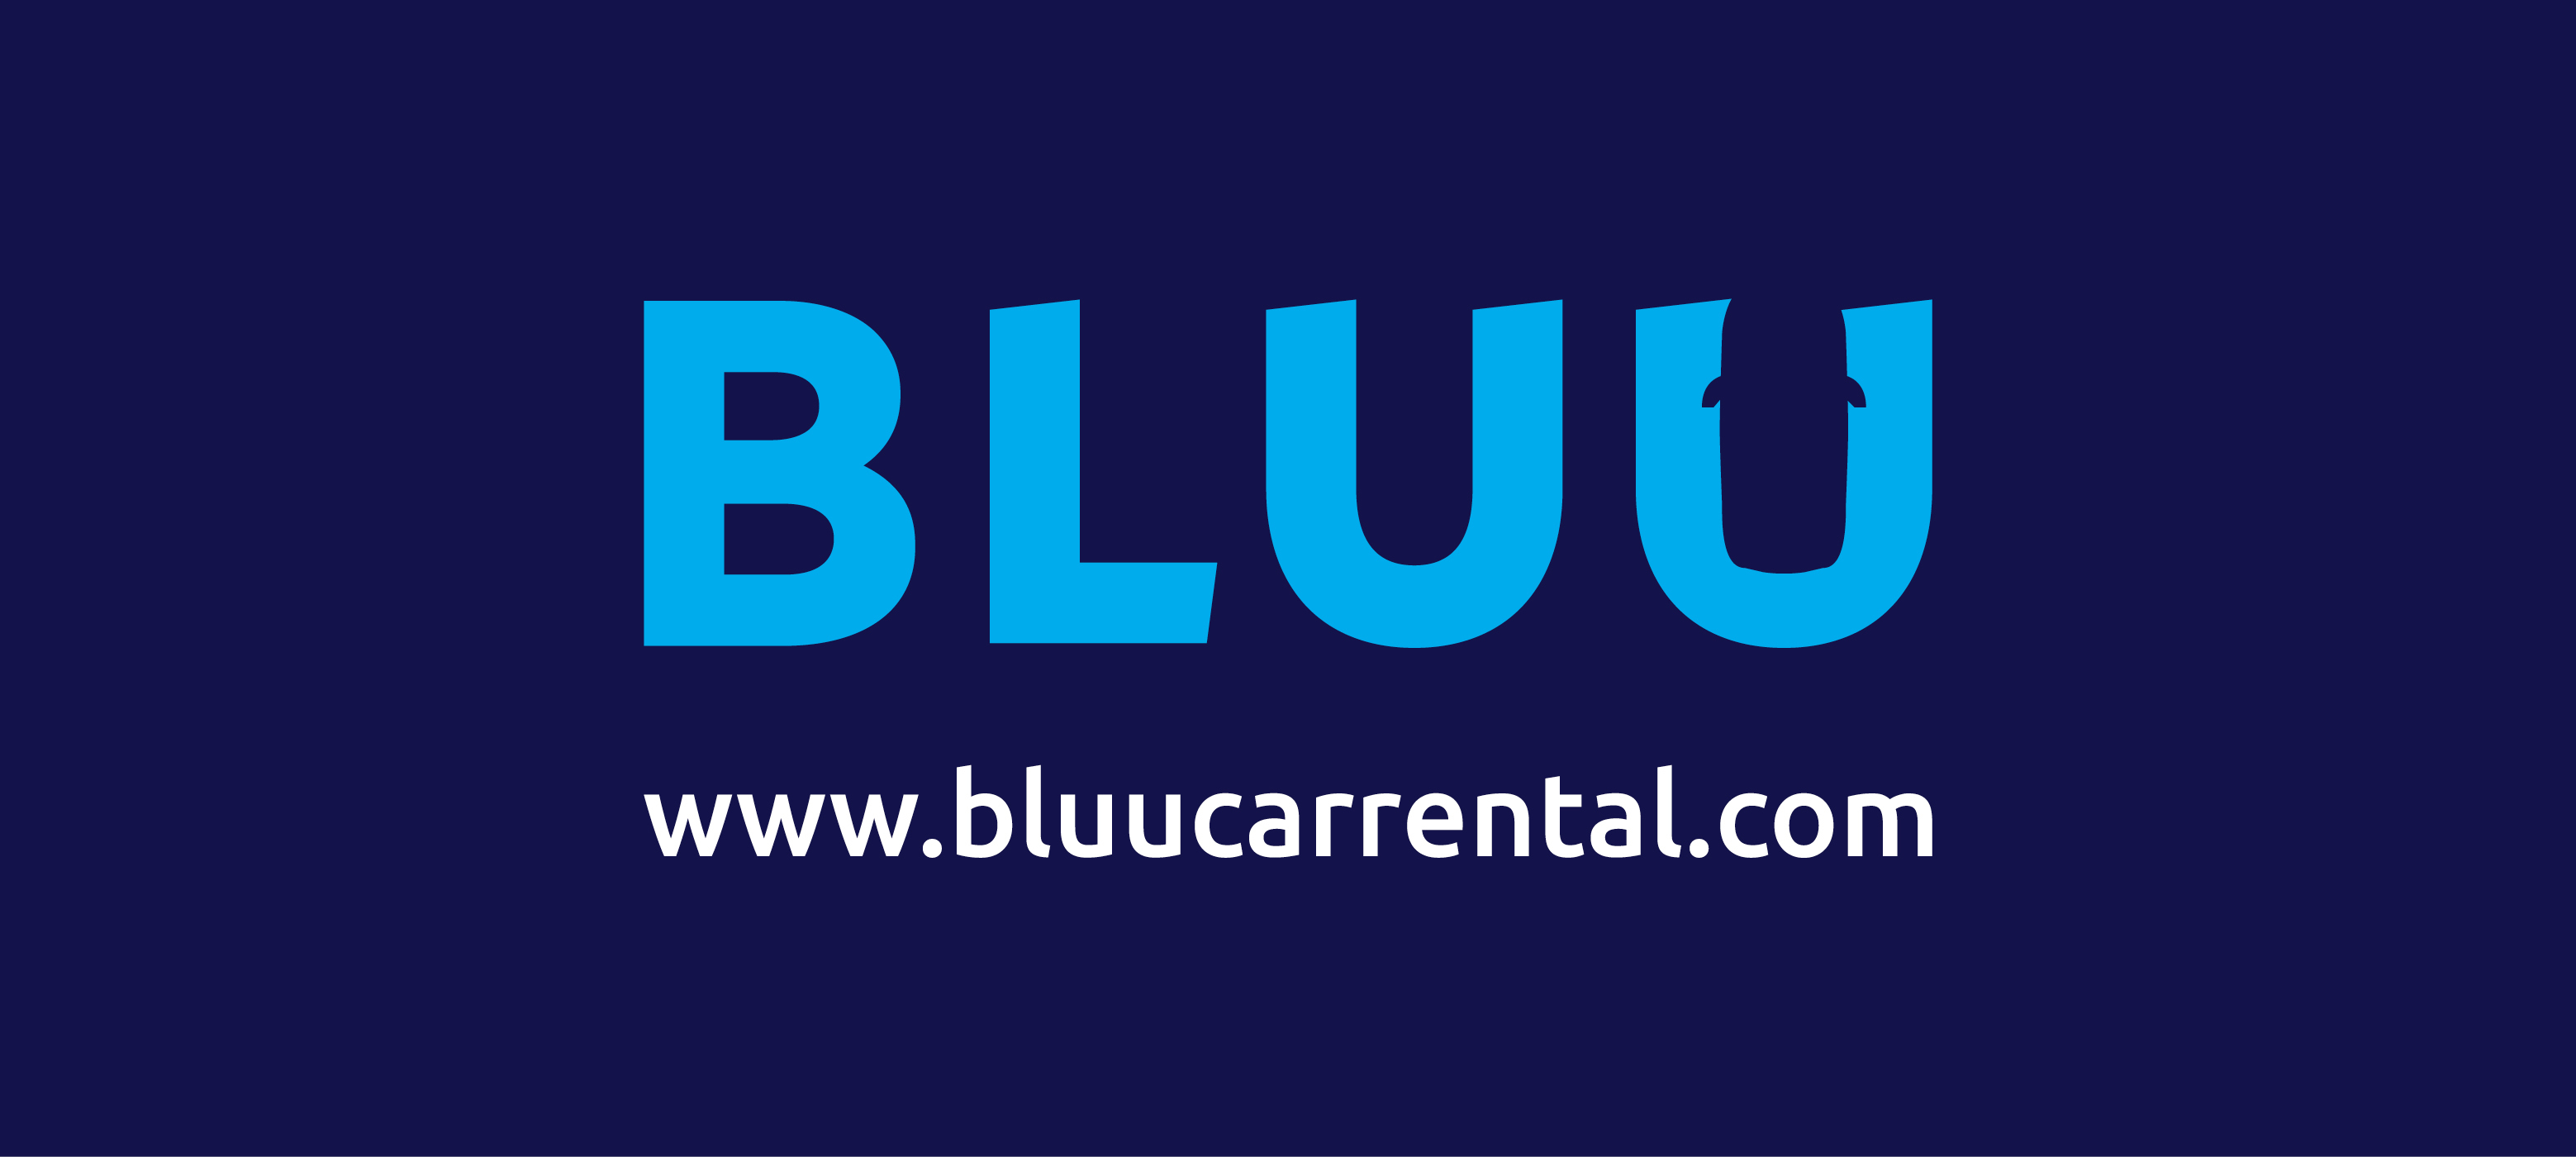 Bluu Car Rentals